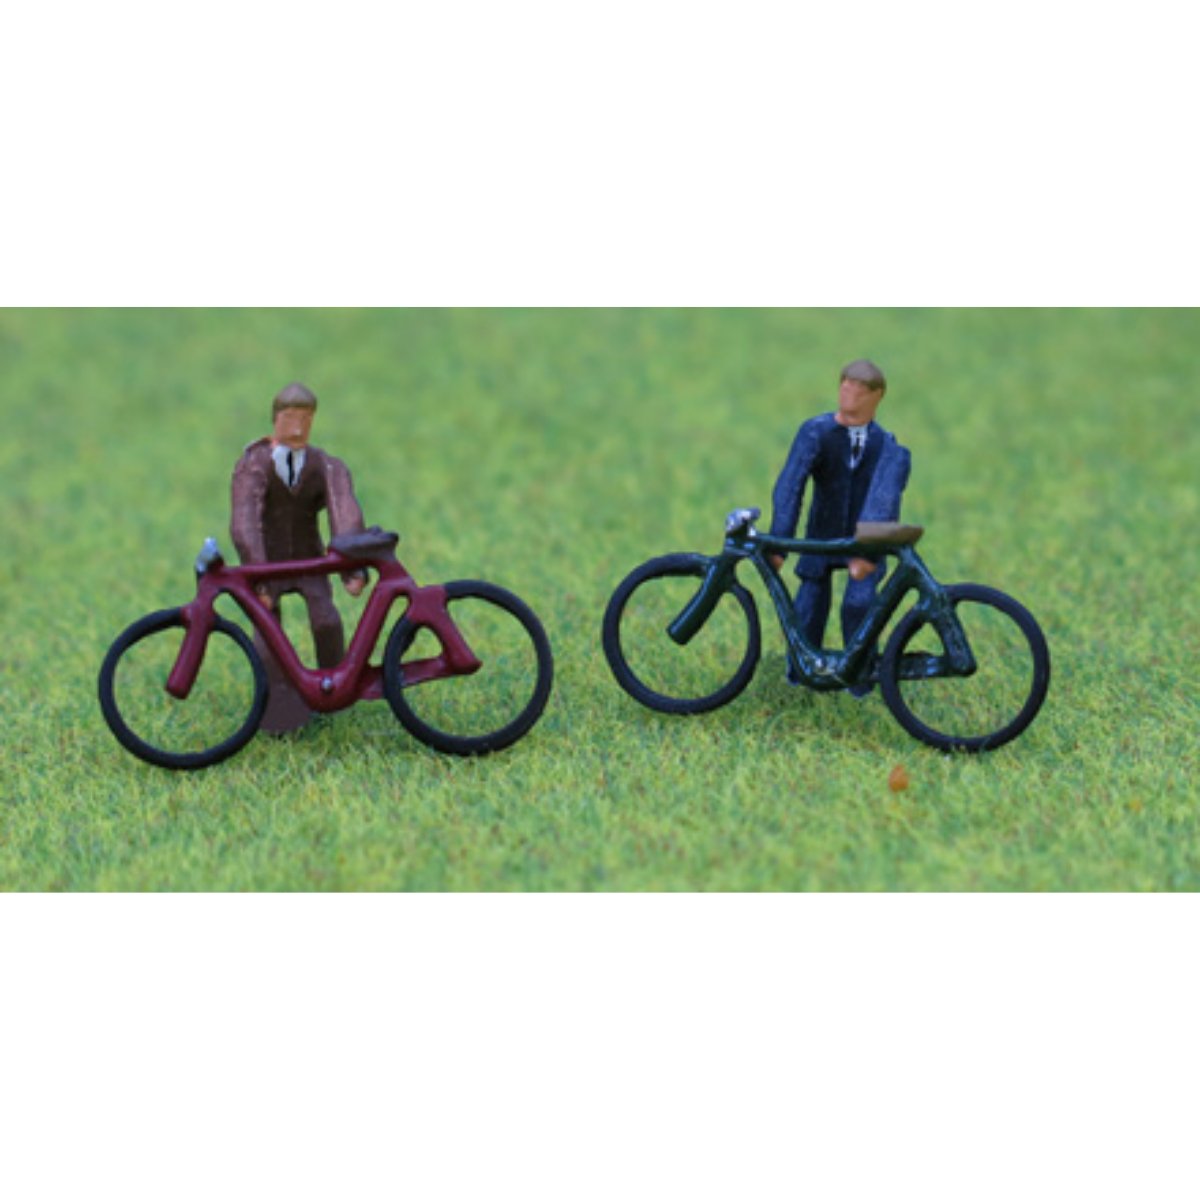 P&D Marsh PDZ08 2x Painted Cyclists (OO Gauge) - Phillips Hobbies